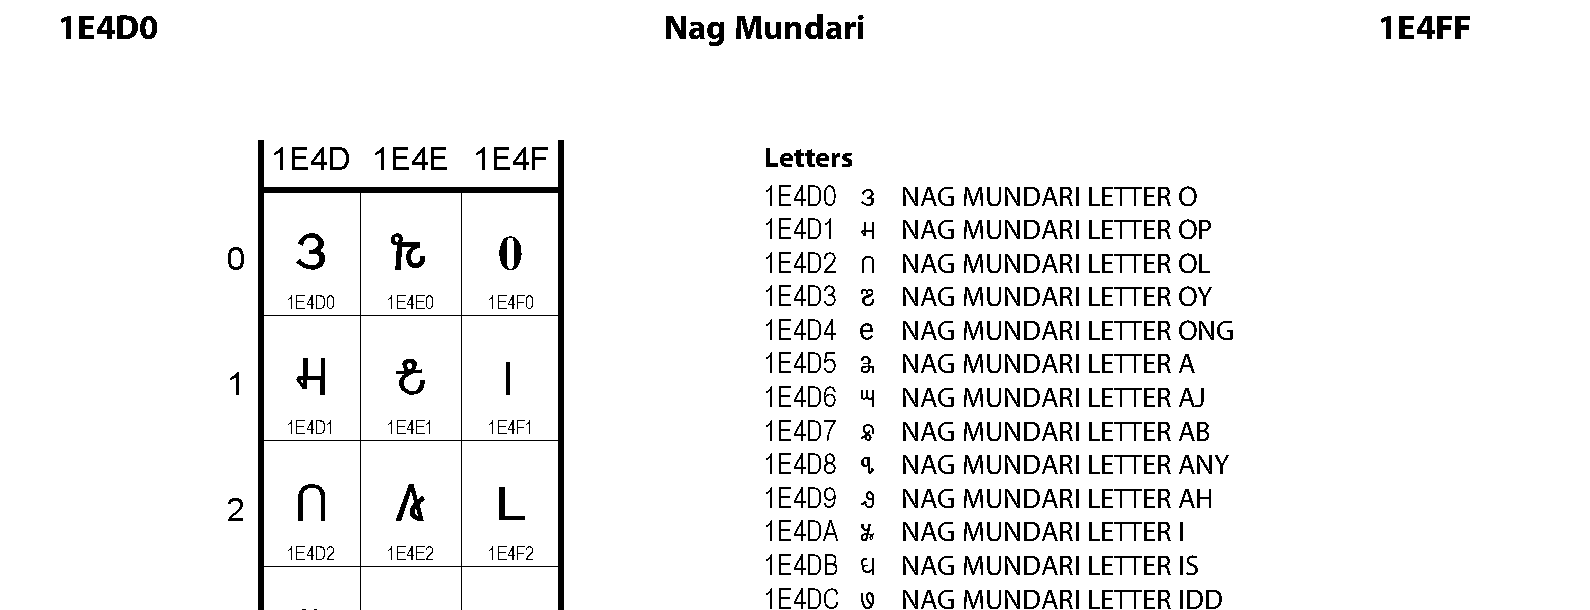 Unicode - Nag Mundari